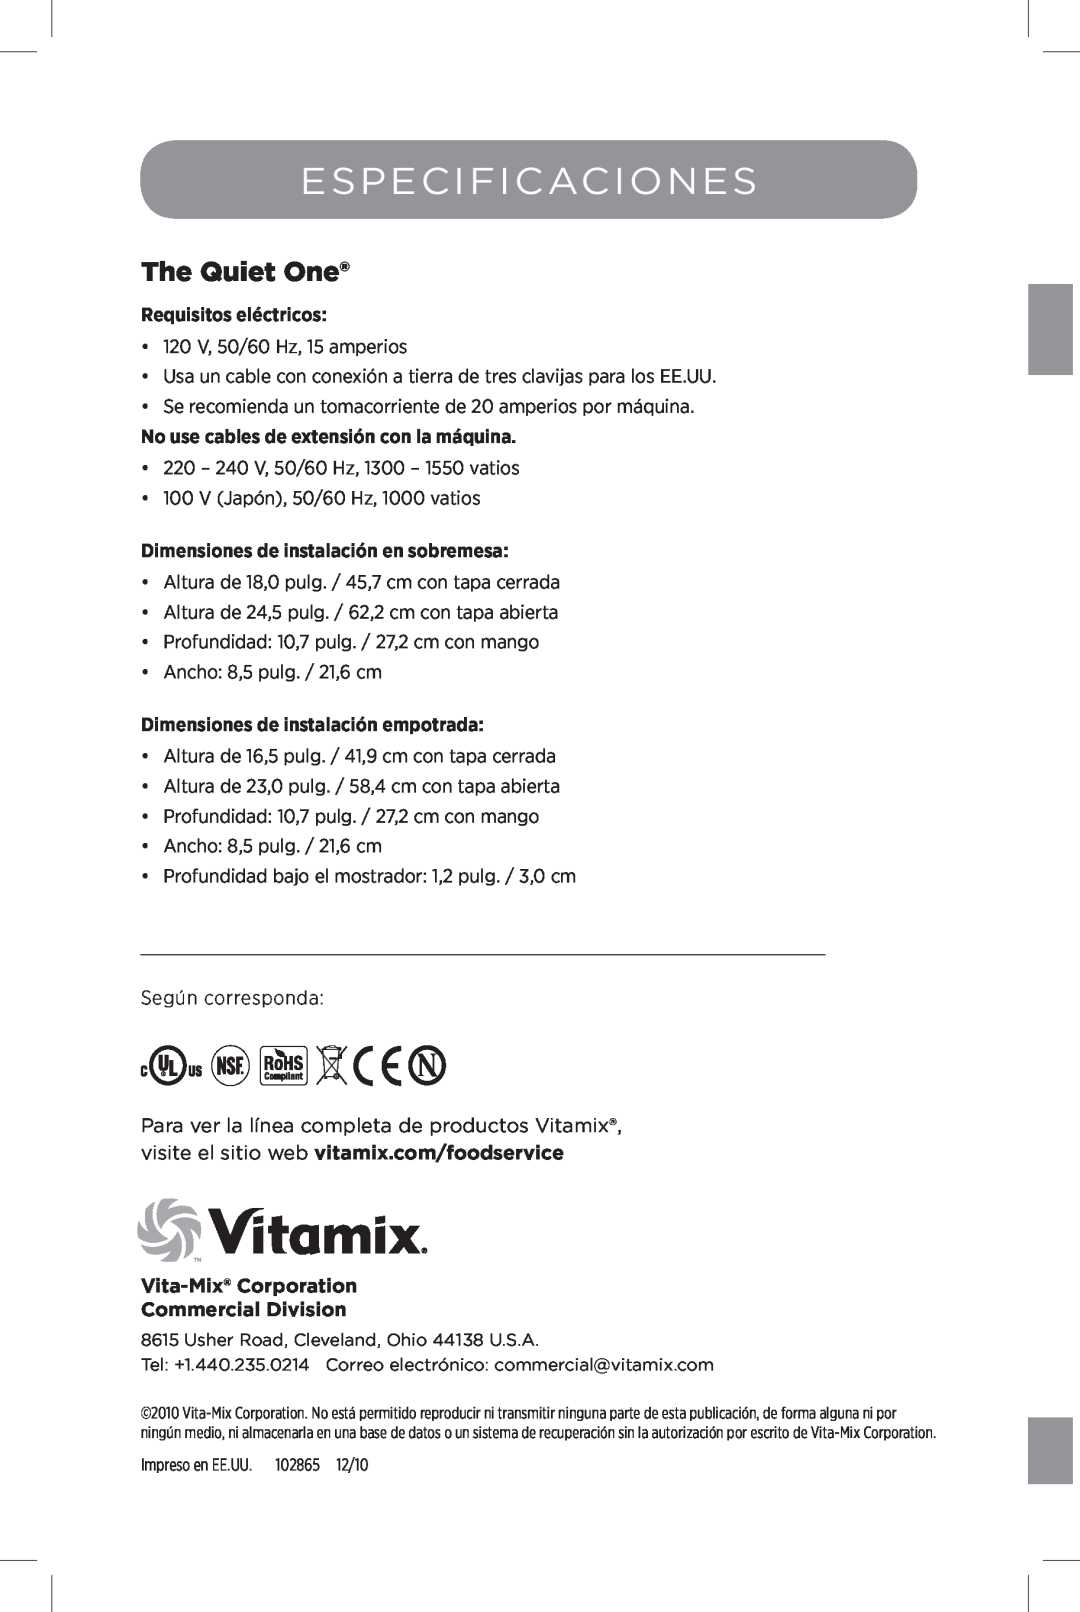 Vita-Mix The Quiet One manual Especificaciones, Vita-Mix Corporation Commercial Division, Requisitos eléctricos 